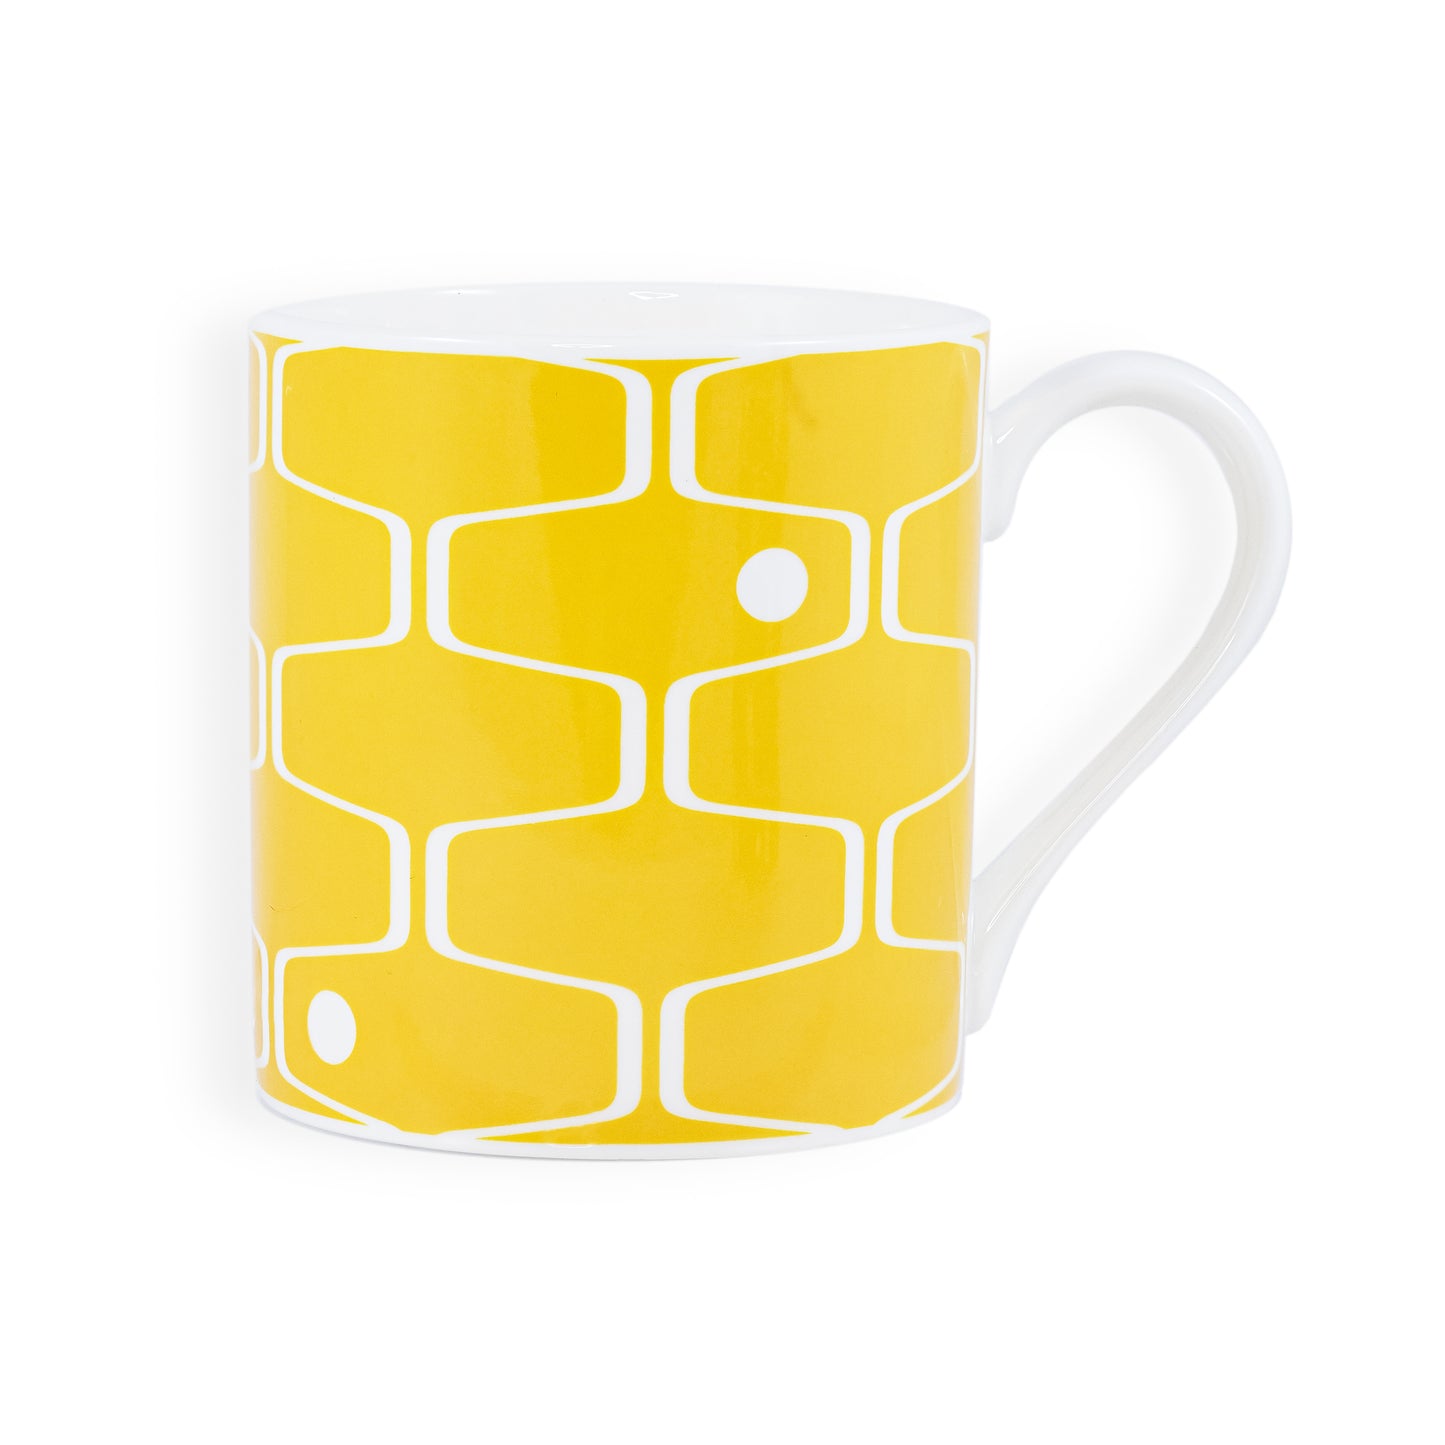 A mustard yellow mug featuring the net & ball pattern